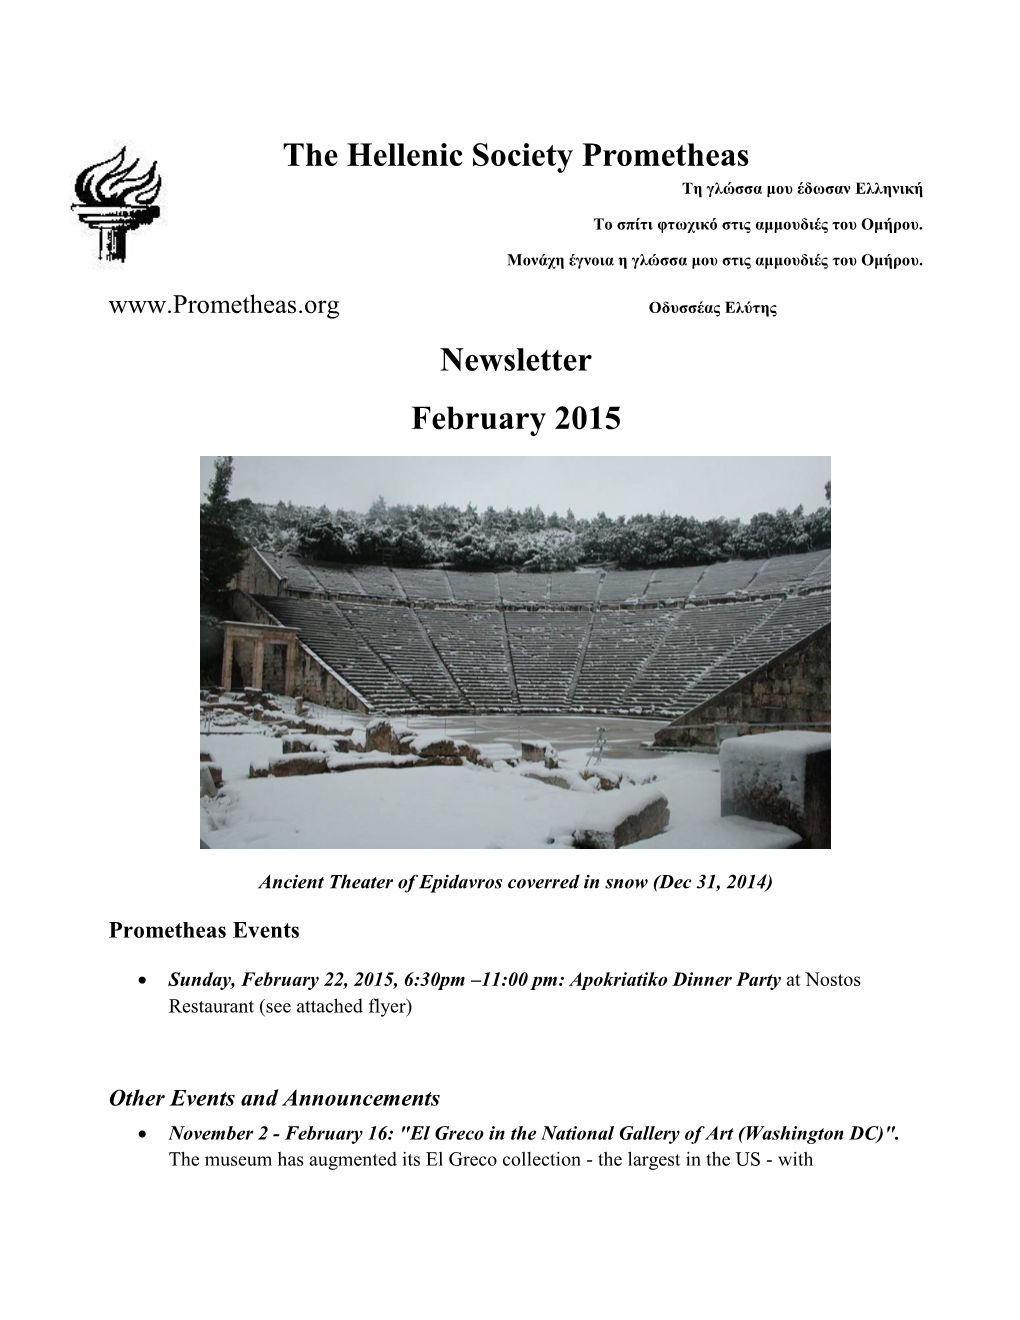 The Hellenic Society Prometheas Newsletter February 2015